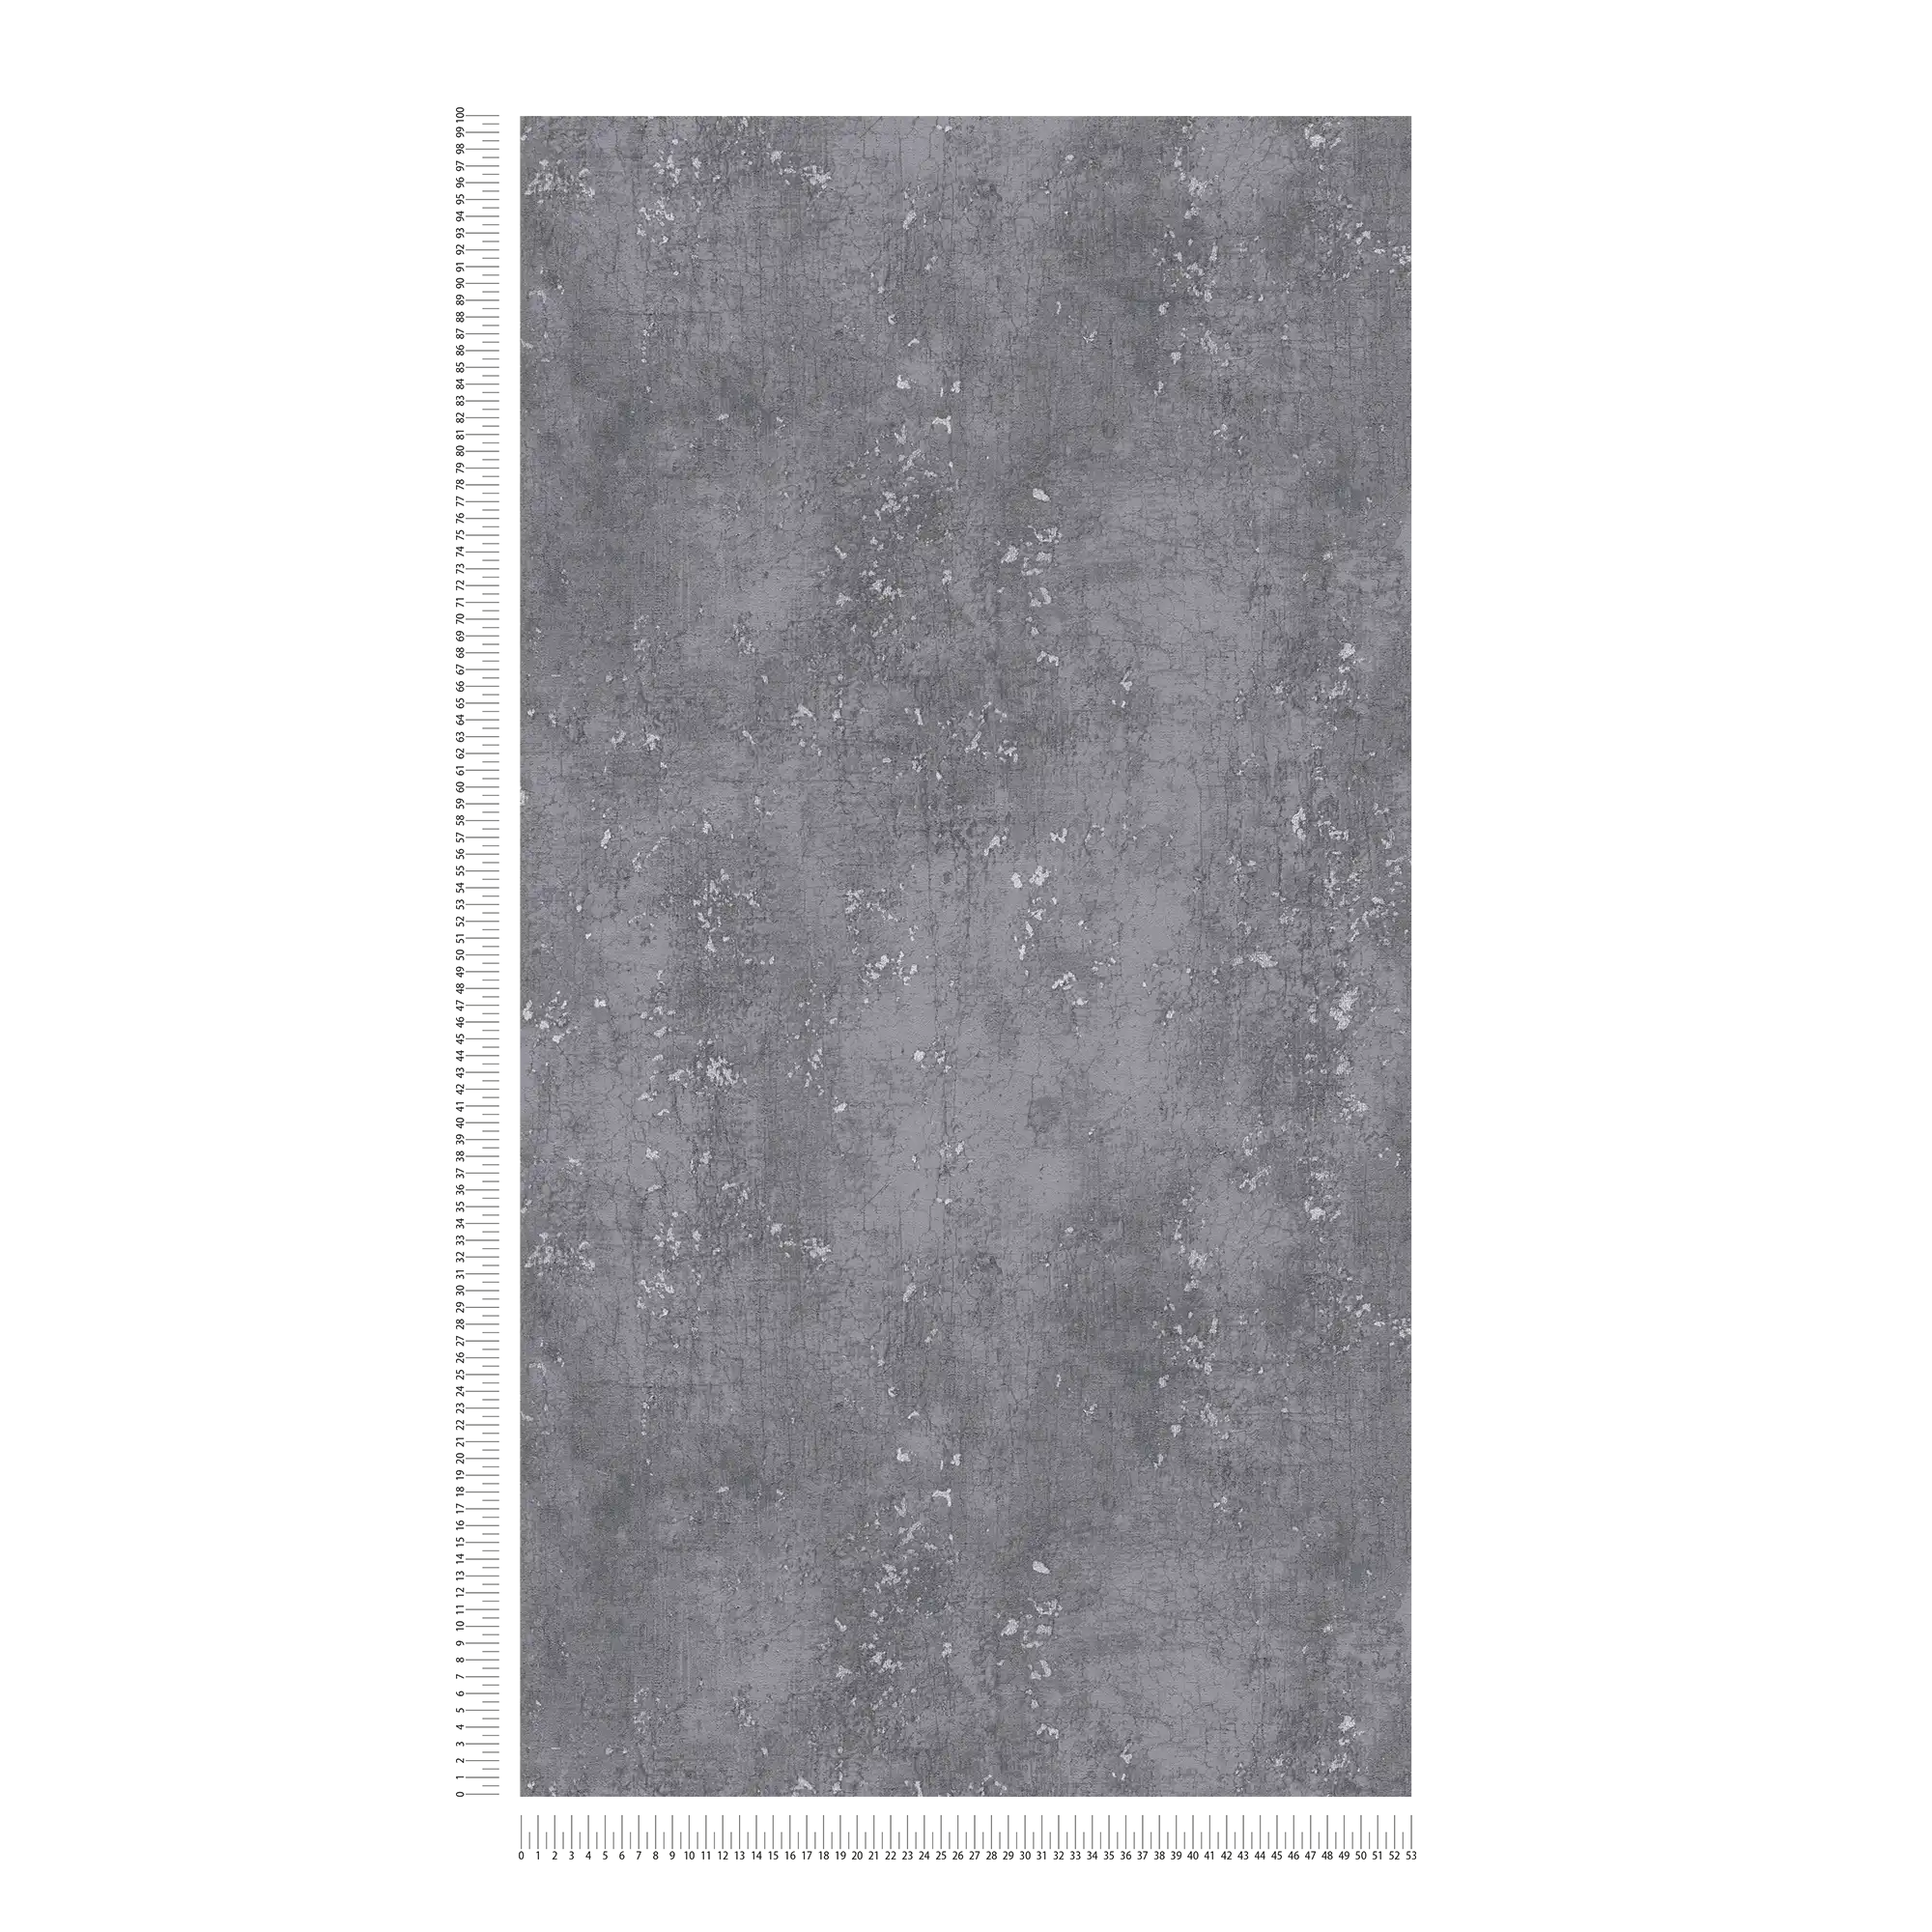             Donkergrijs behang met Udes gipslook - grijs, metallic
        